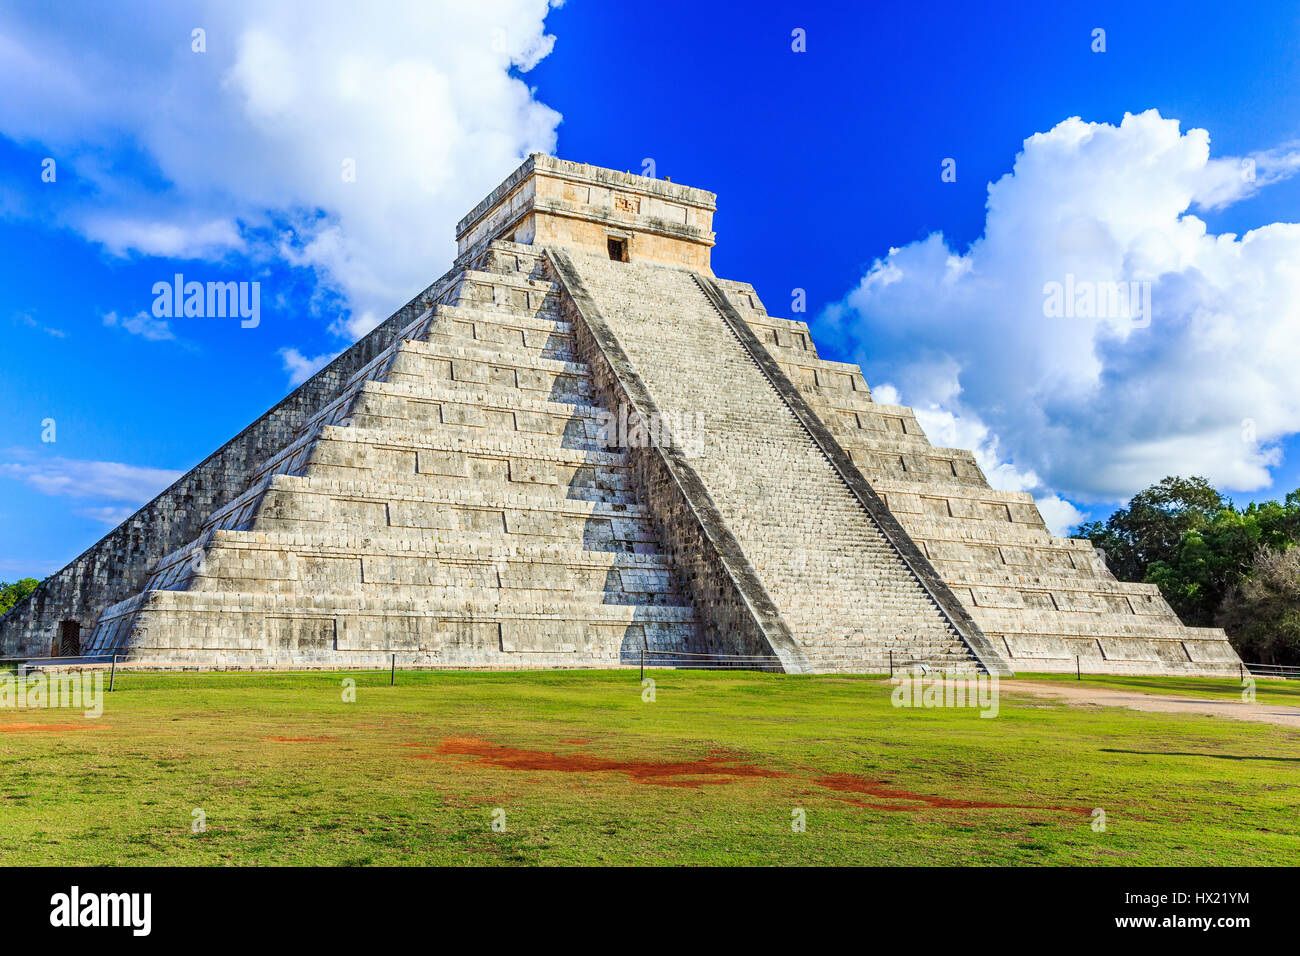 Chichen Itza, Messico. Piramide di Kukulcan nell'antica città maya. Foto Stock